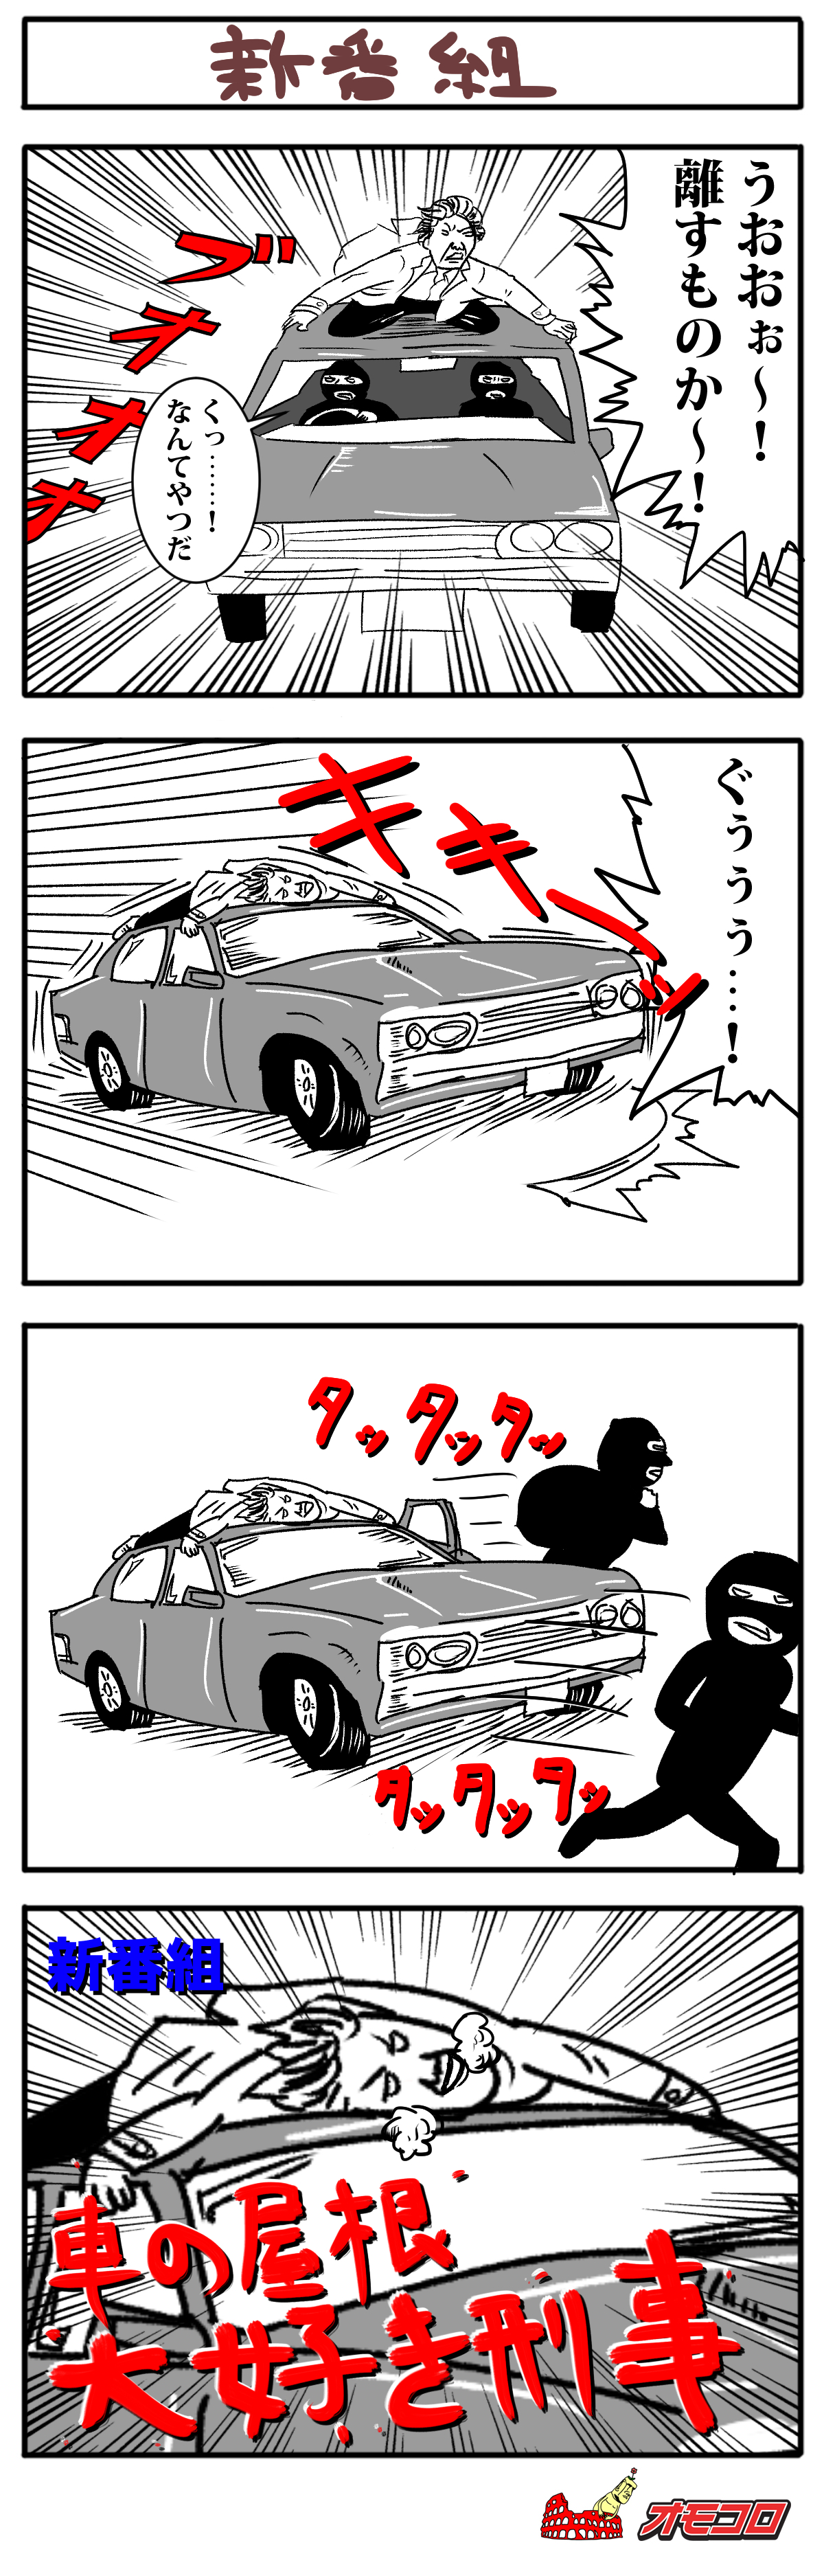 【4コマ漫画】新番組